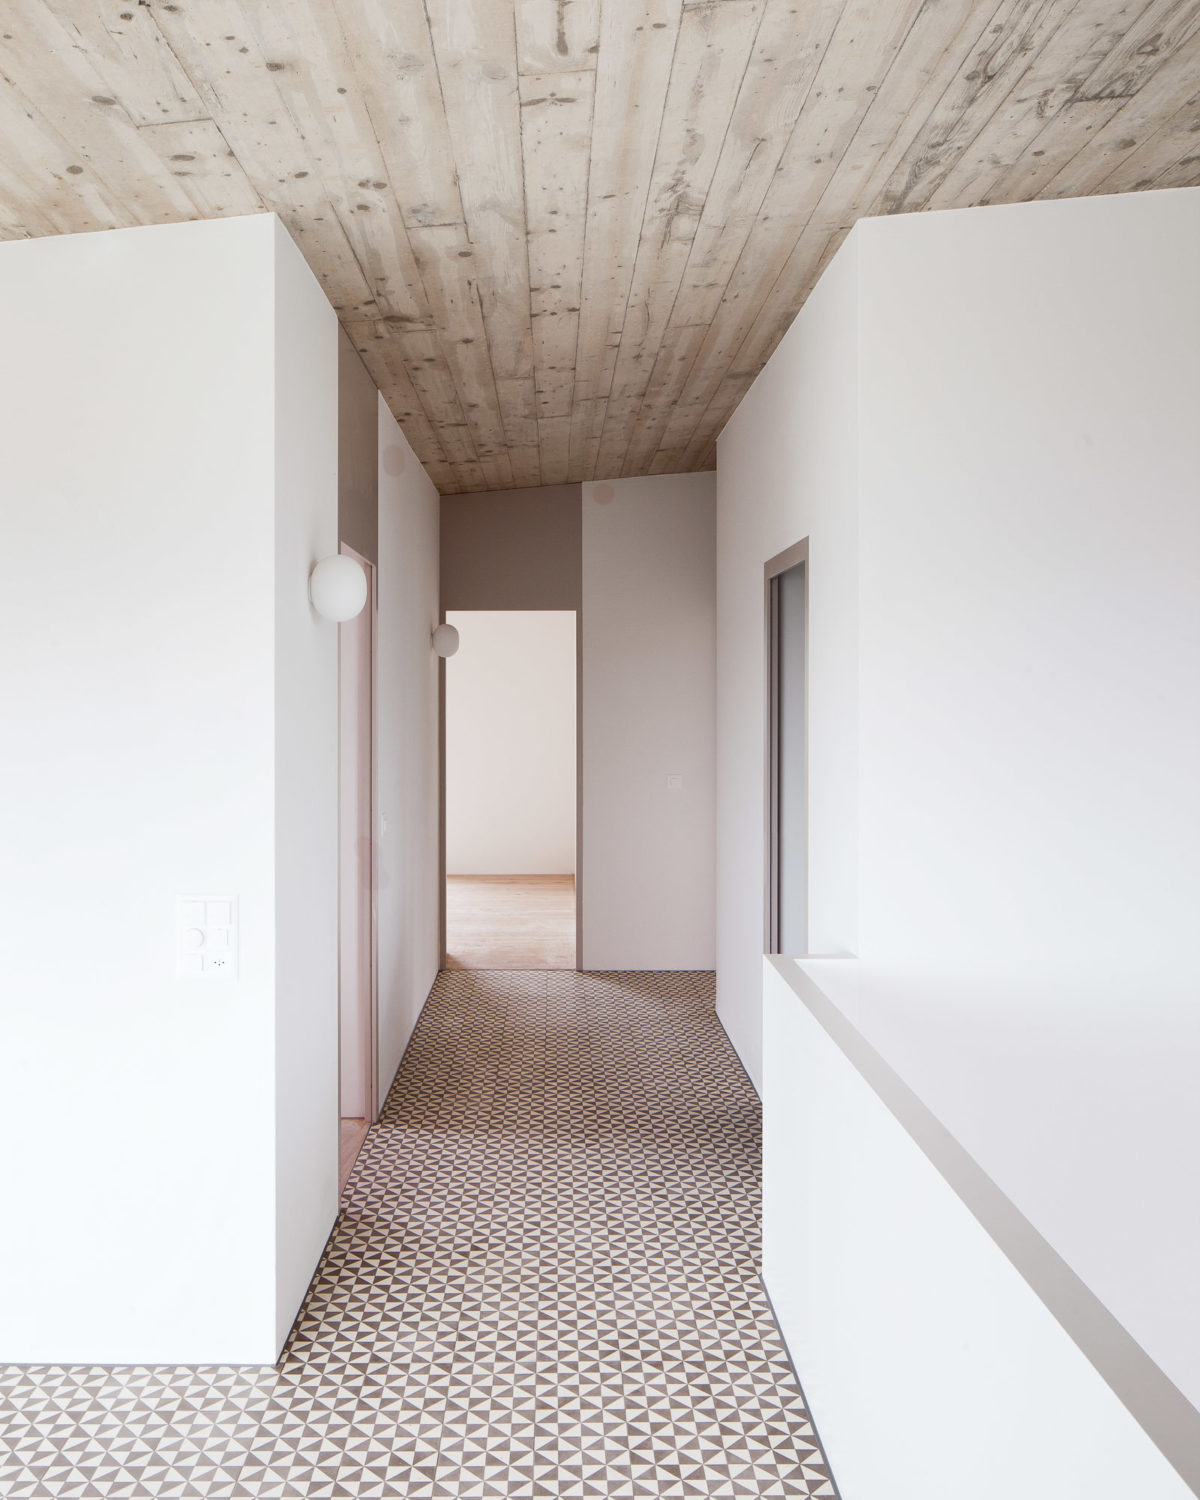 Oberwil-Lieli - Wohnhaus für eine junge Familie - Schmid Schaerer Architekten Zürich